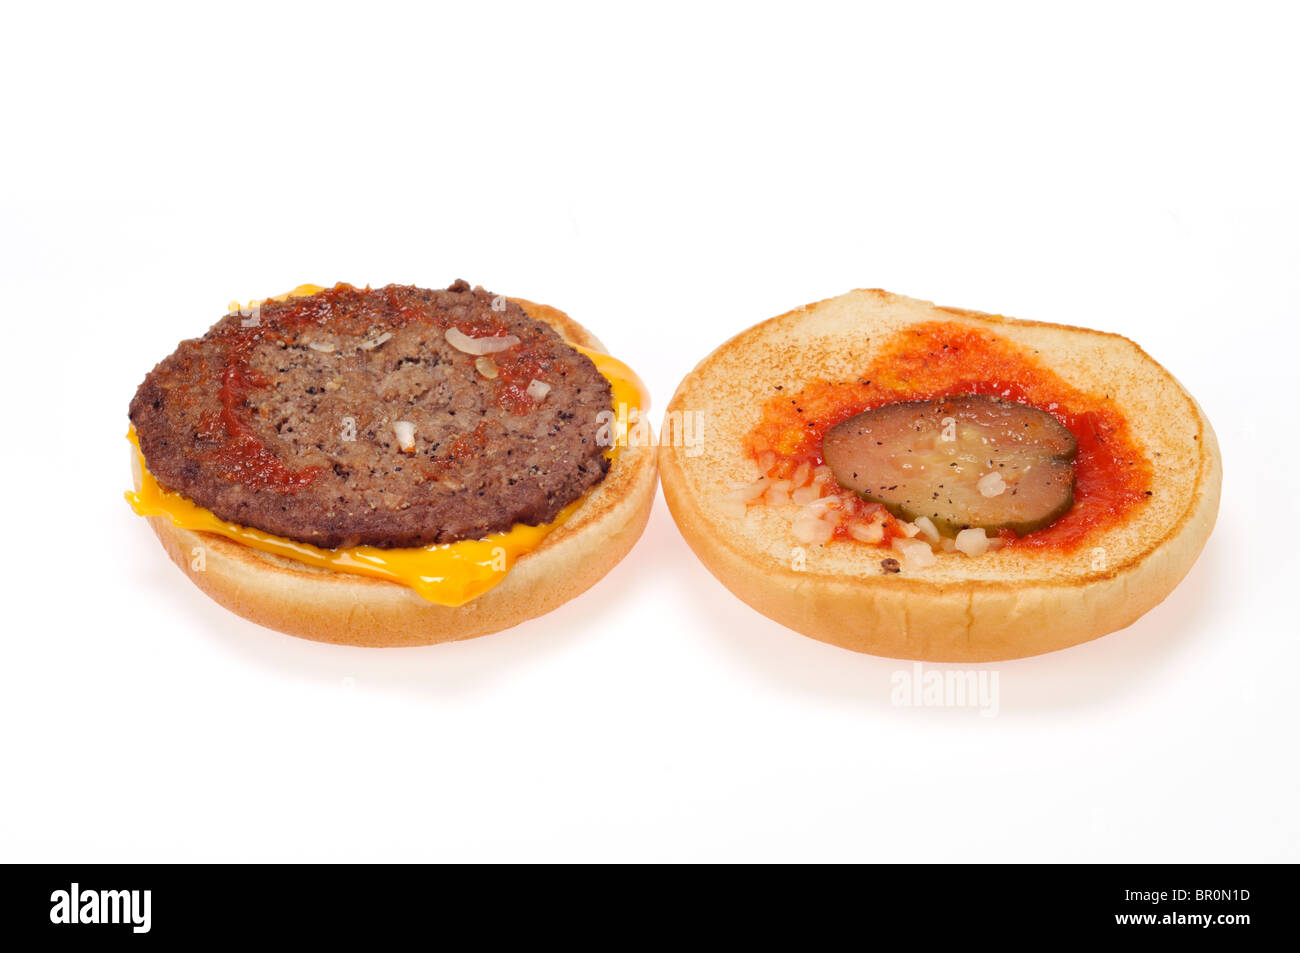 Offenen Cheeseburger in Brot Brötchen mit Deckel aus zeigt Belag auf weißem Hintergrund, Ausschnitt. Stockfoto